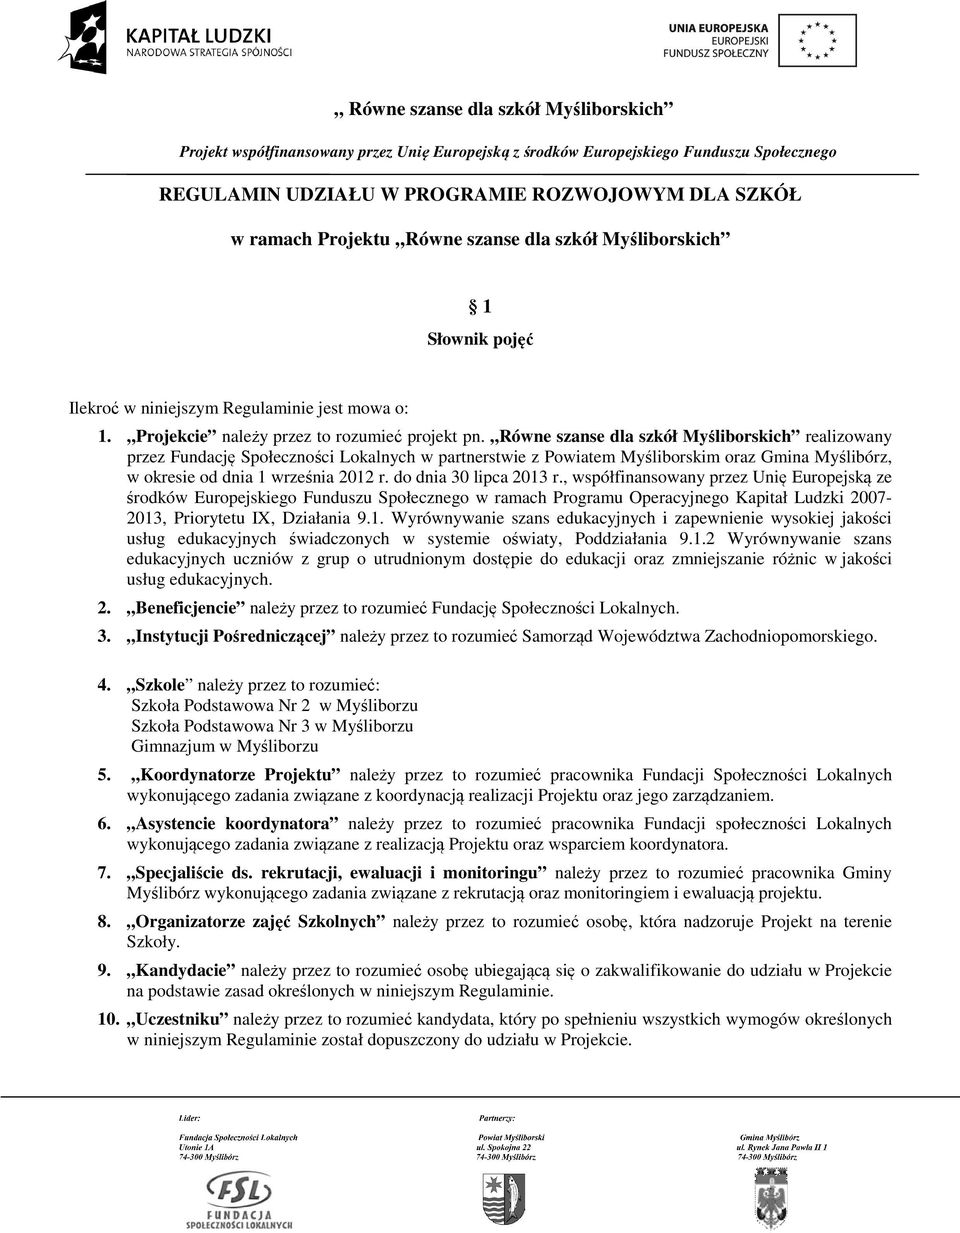 Równe szanse dla szkół Myśliborskich realizowany przez Fundację Społeczności Lokalnych w partnerstwie z Powiatem Myśliborskim oraz Gmina Myślibórz, w okresie od dnia 1 września 2012 r.